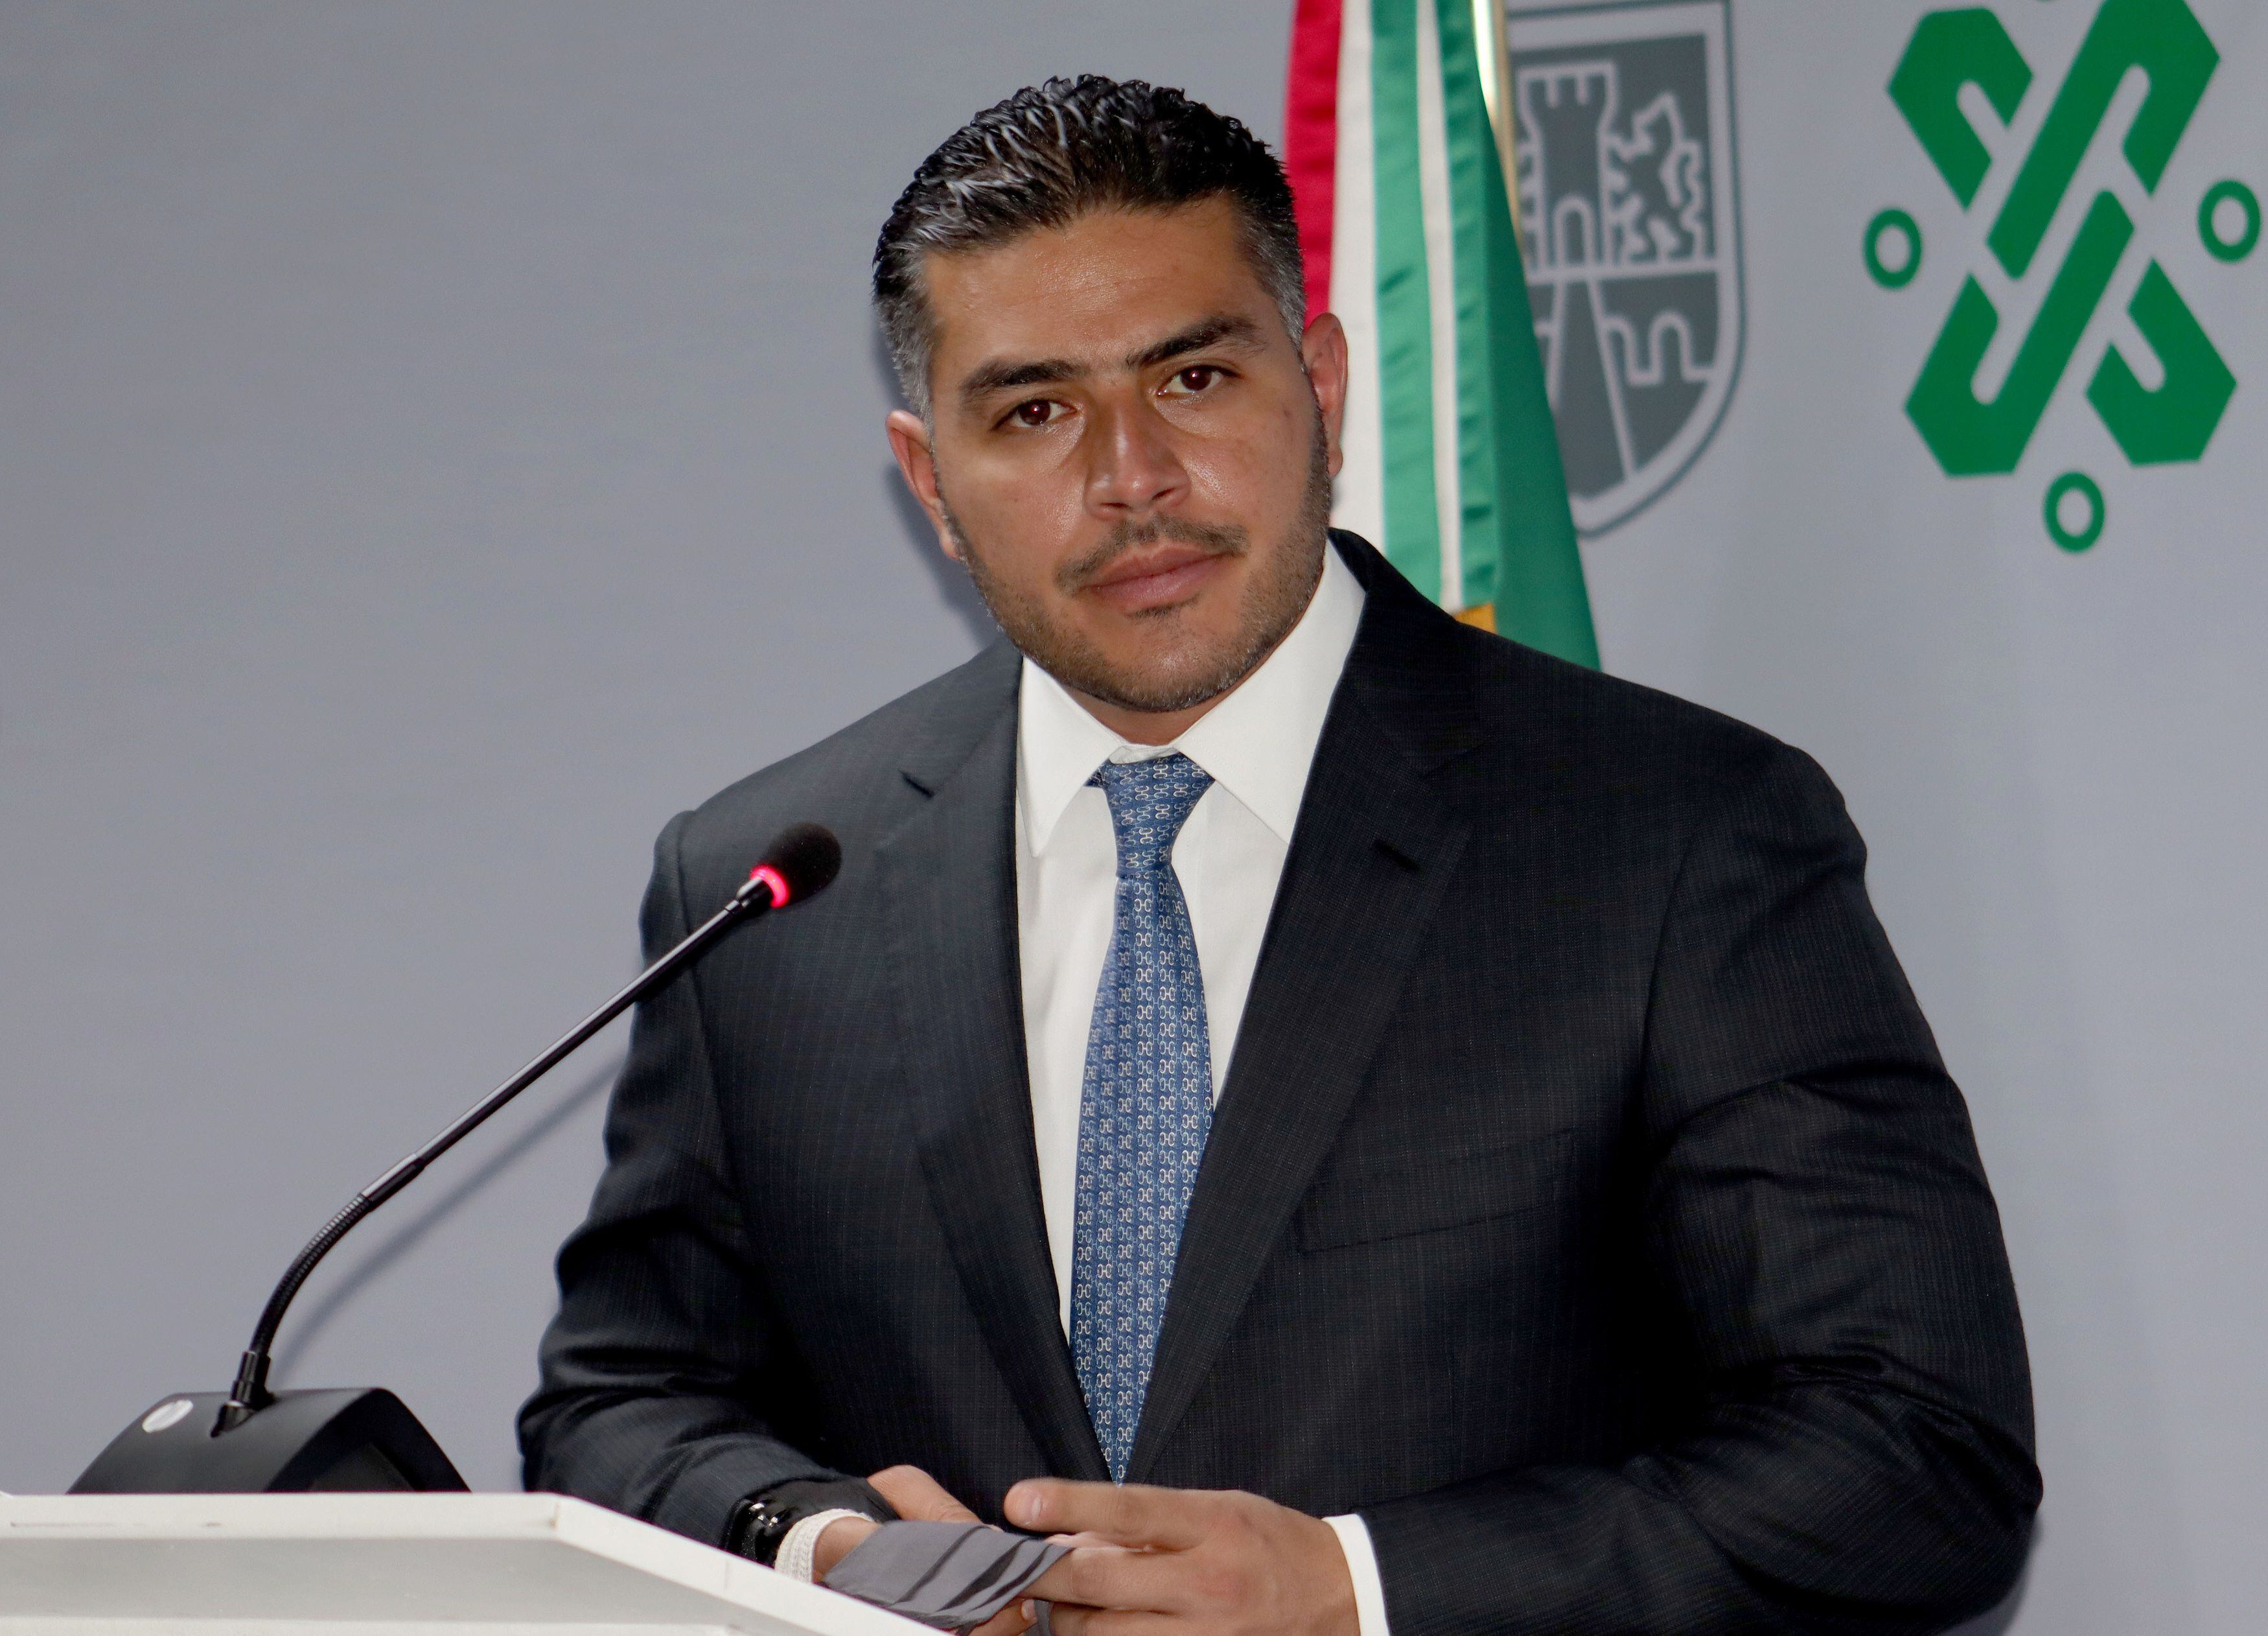 Rubalcava reconoció tener amistad con García Harfuch y otros morenistas
EFE/Mario Guzmán
